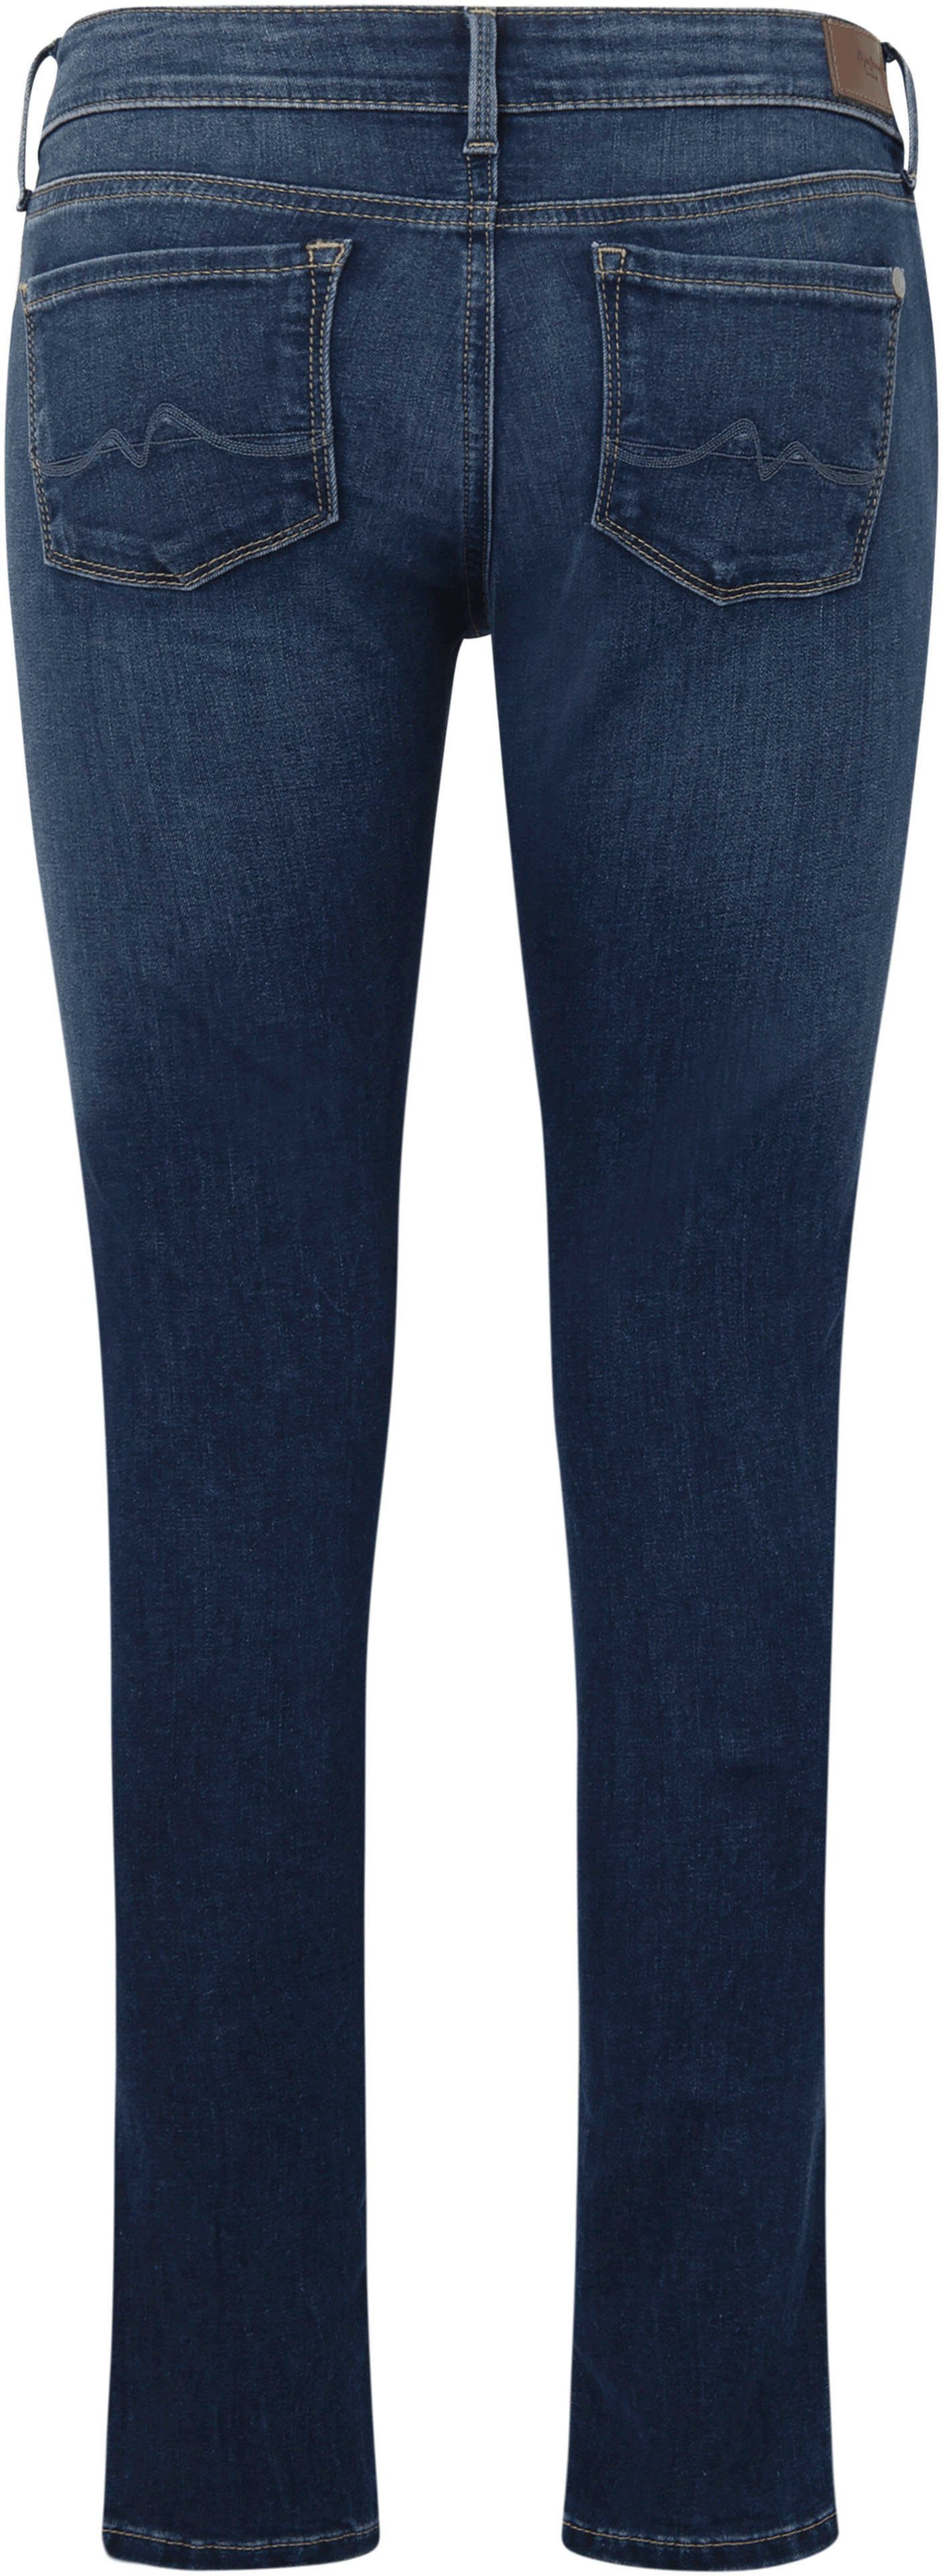 Pepe Jeans Skinny-fit-Jeans SOHO im dark 5-Pocket-Stil und mit 1-Knopf used Bund Stretch-Anteil worn